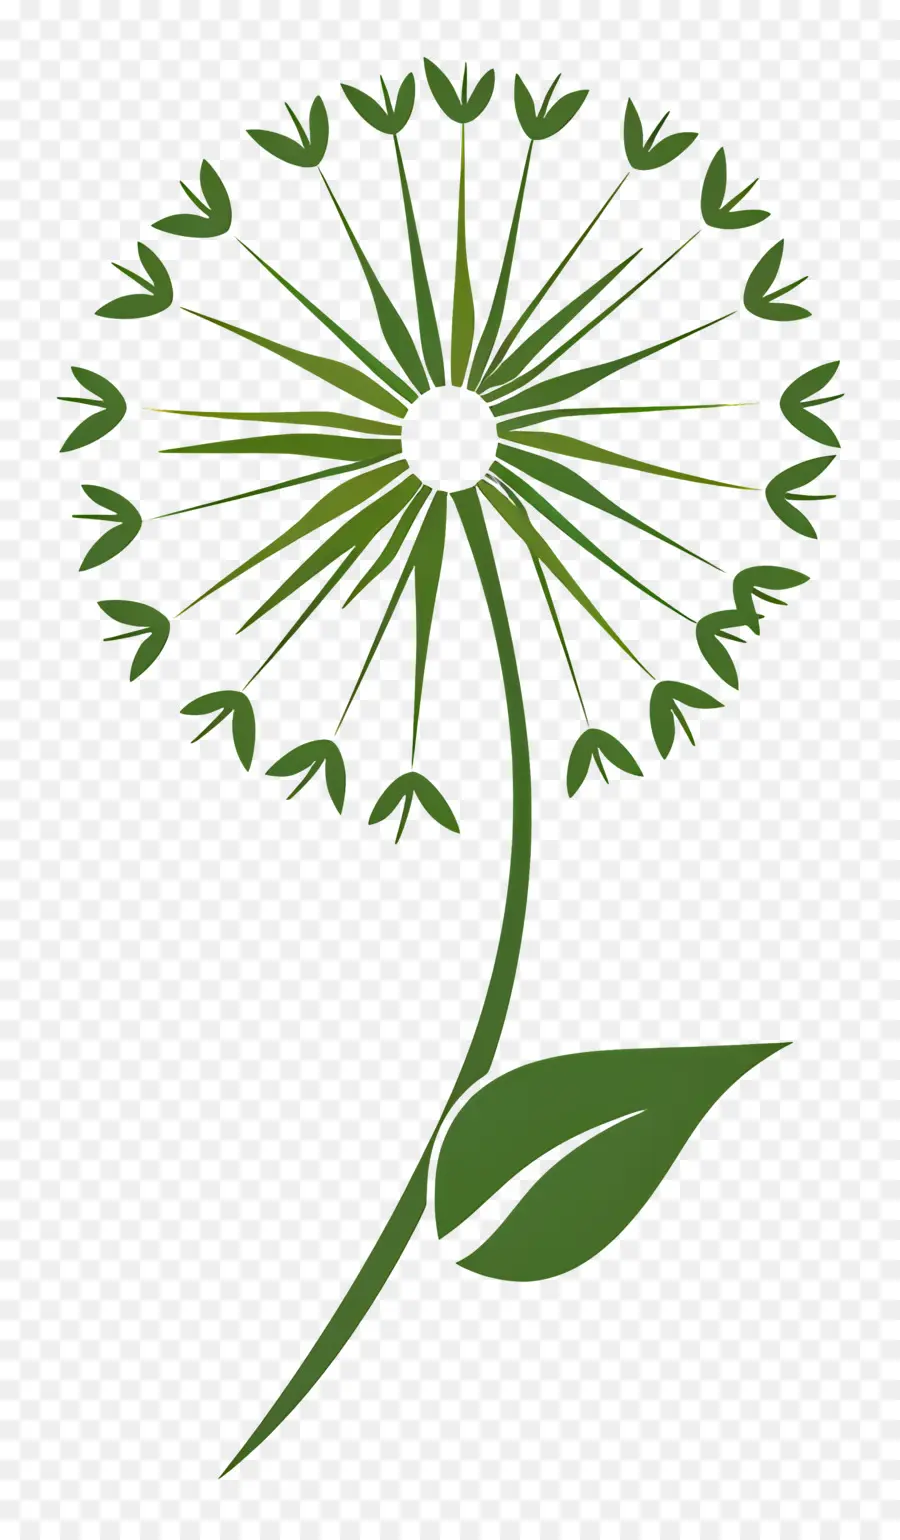 Löwenzahn Löwenzahnblume weiße Blütenblätter grüne Blätter - Einfache Illustration der Löwenzahnblume mit Blättern